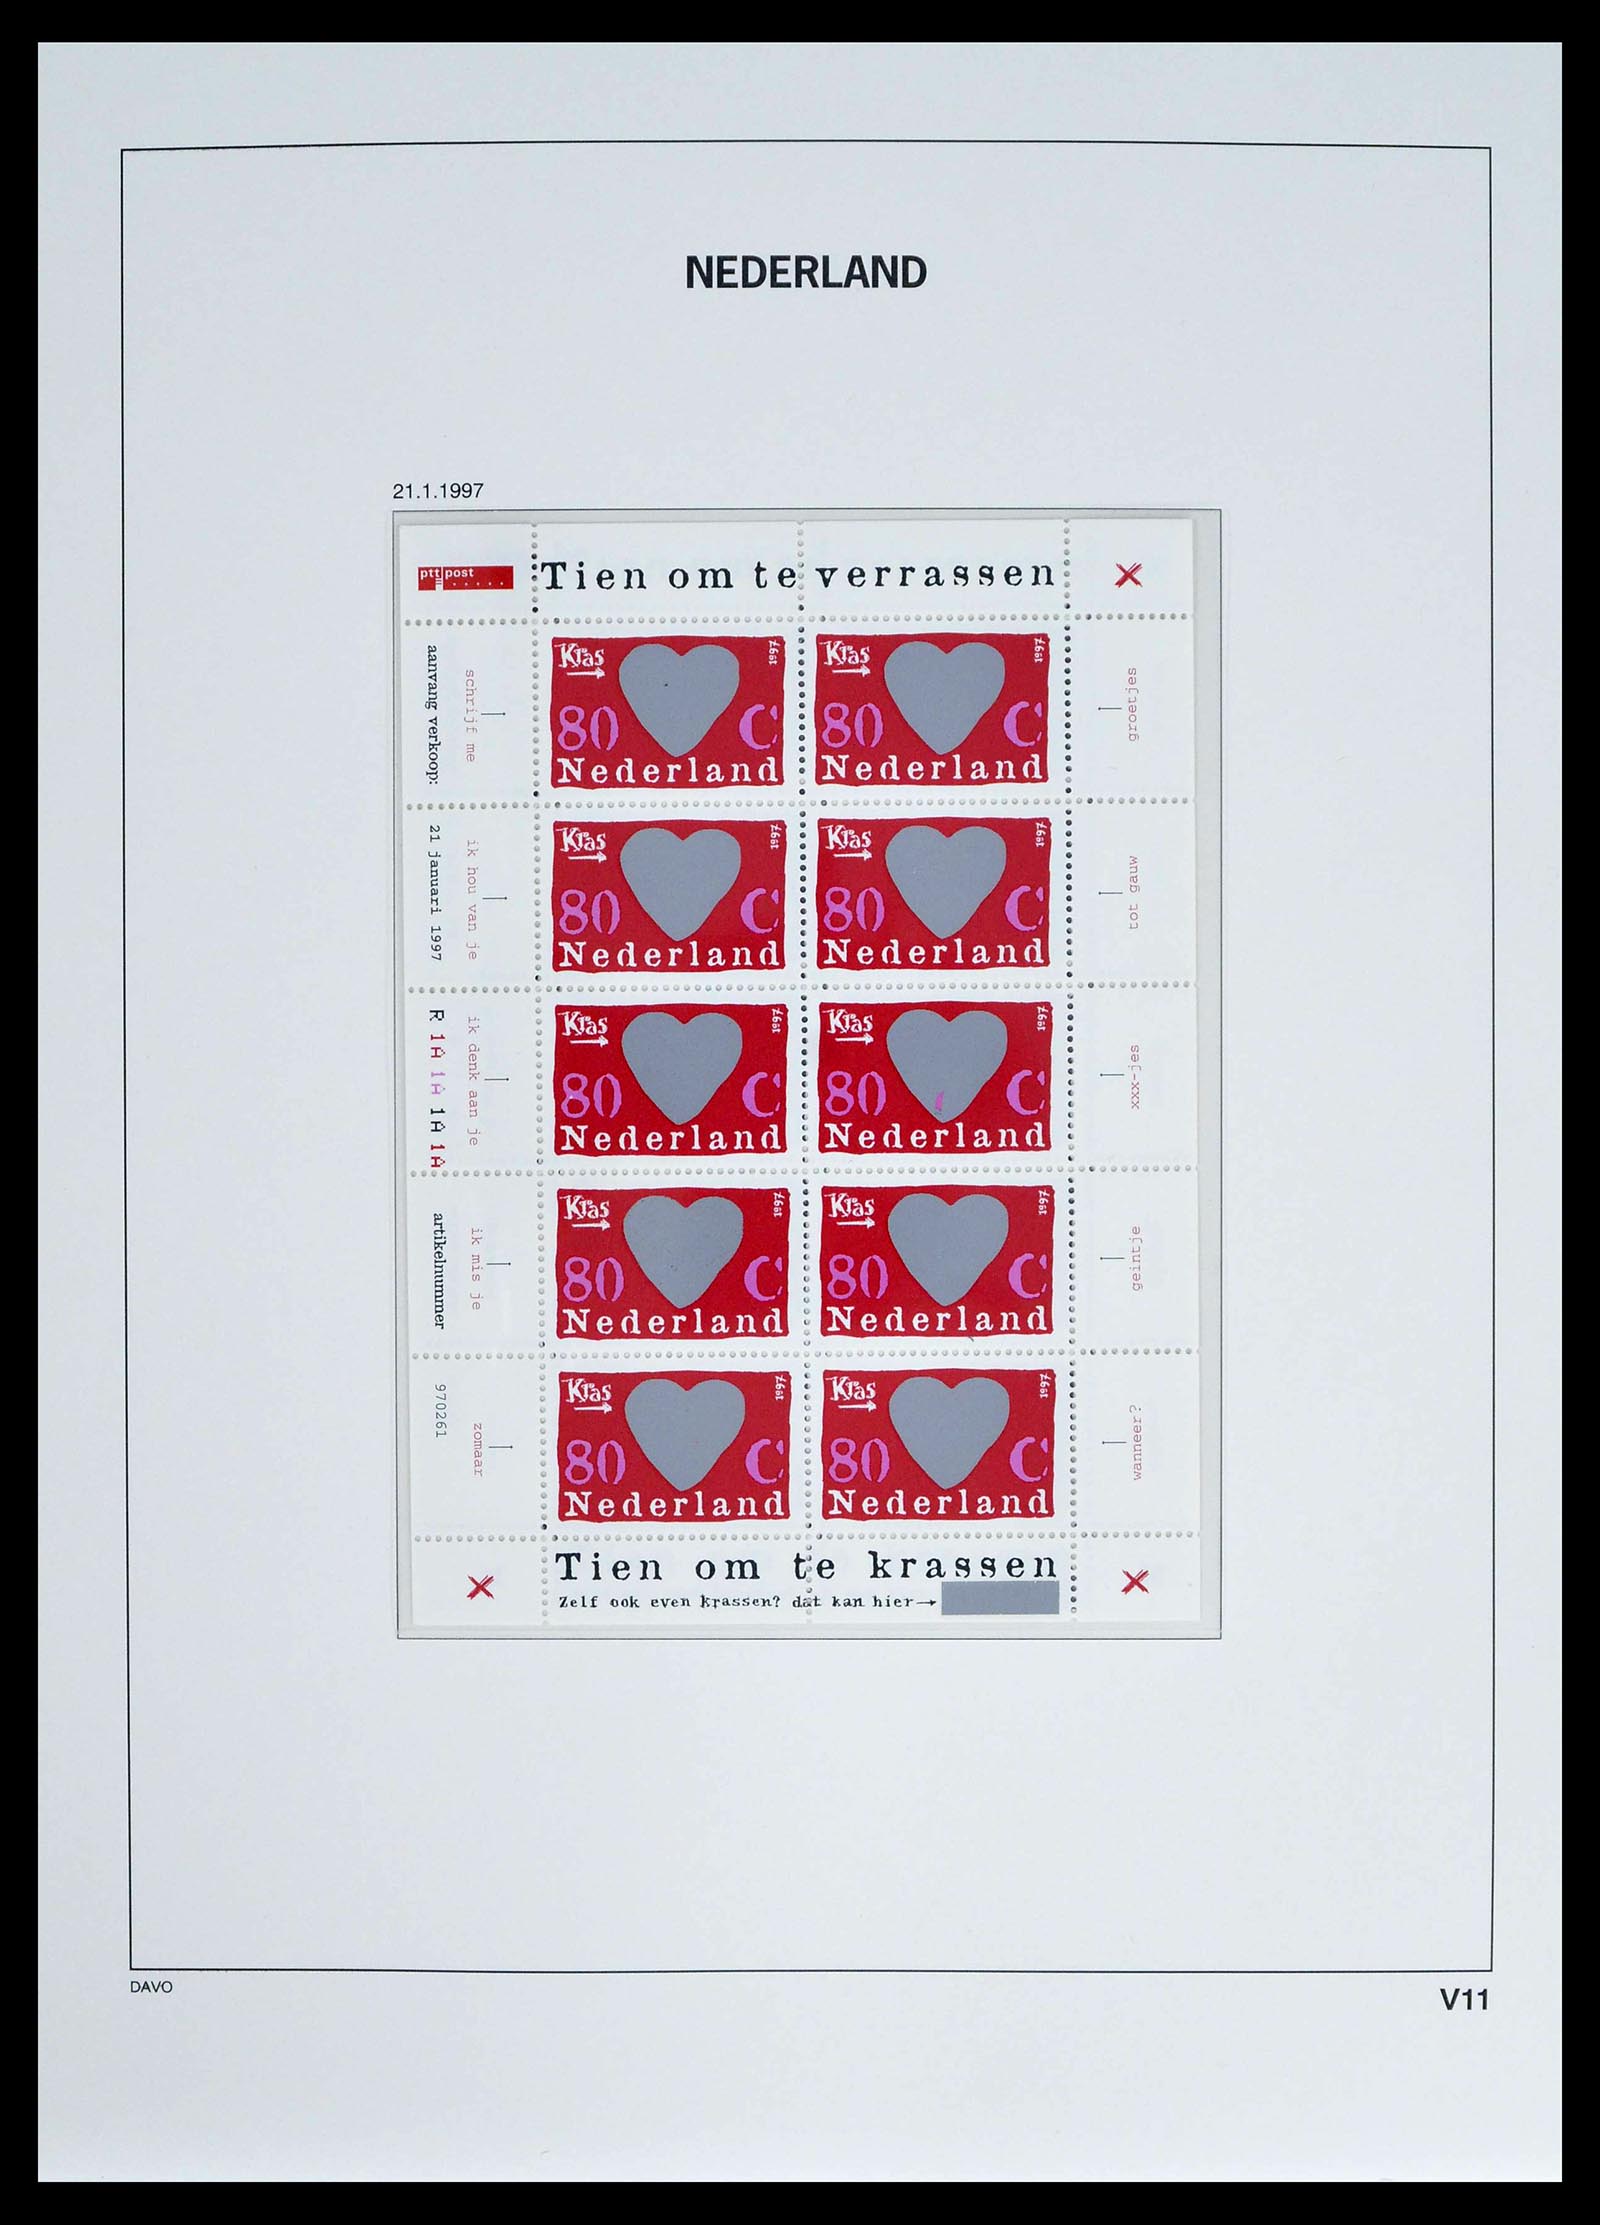 39134 0020 - Stamp collection 39134 Netherlands sheetlets 1992-2019!